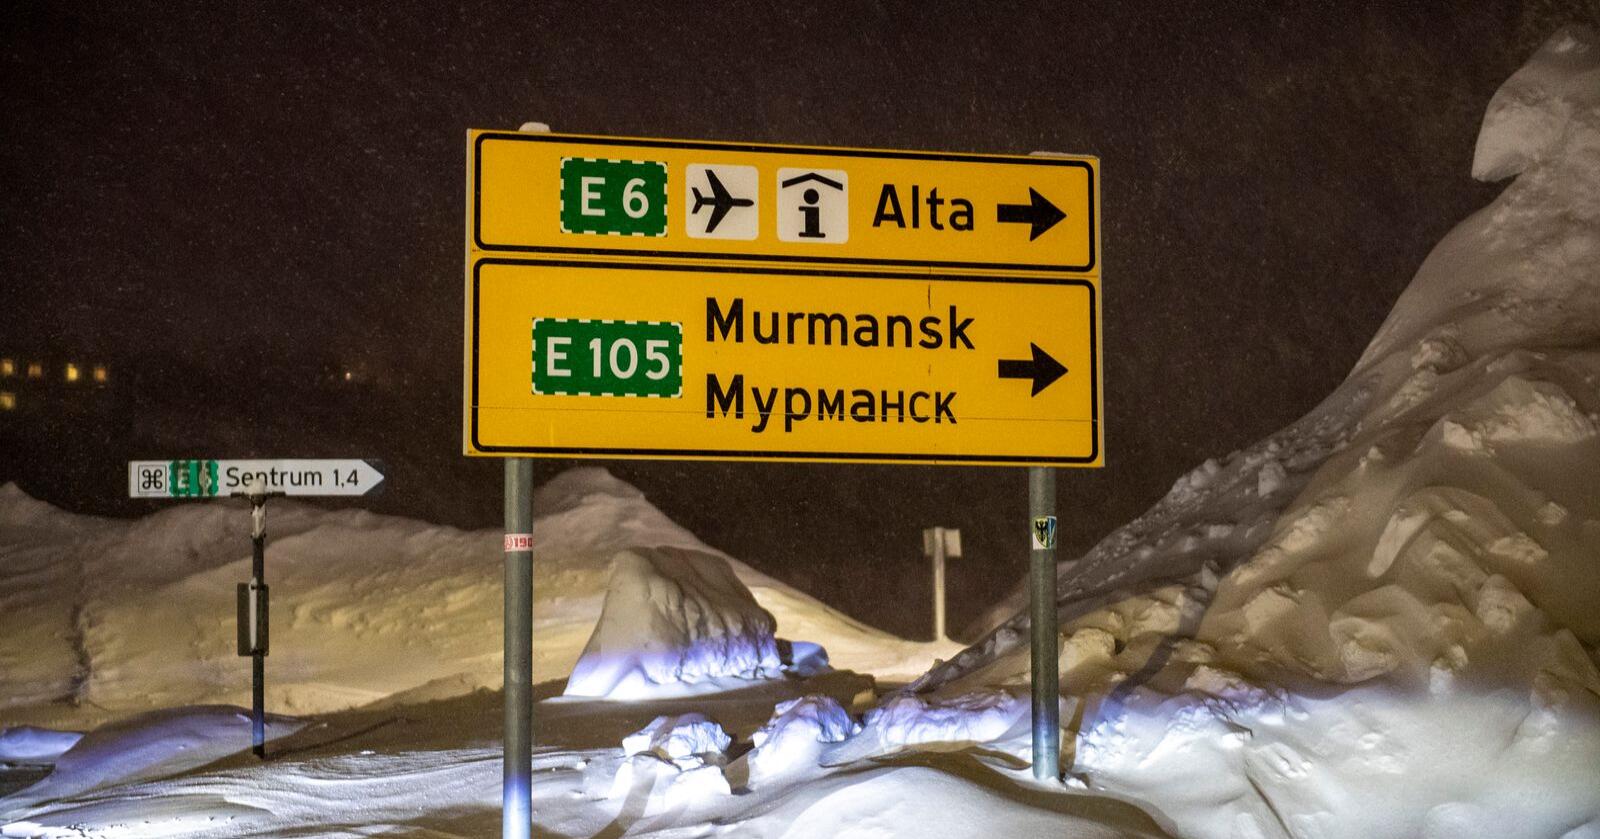 Spesiell situasjon: Norges største fylke i areal er også det fylket med fysisk grense mot Russland. Det setter Finnmark i en spesiell situasjon. Norge er Nato i nord. Foto: Annika Byrde / NTB